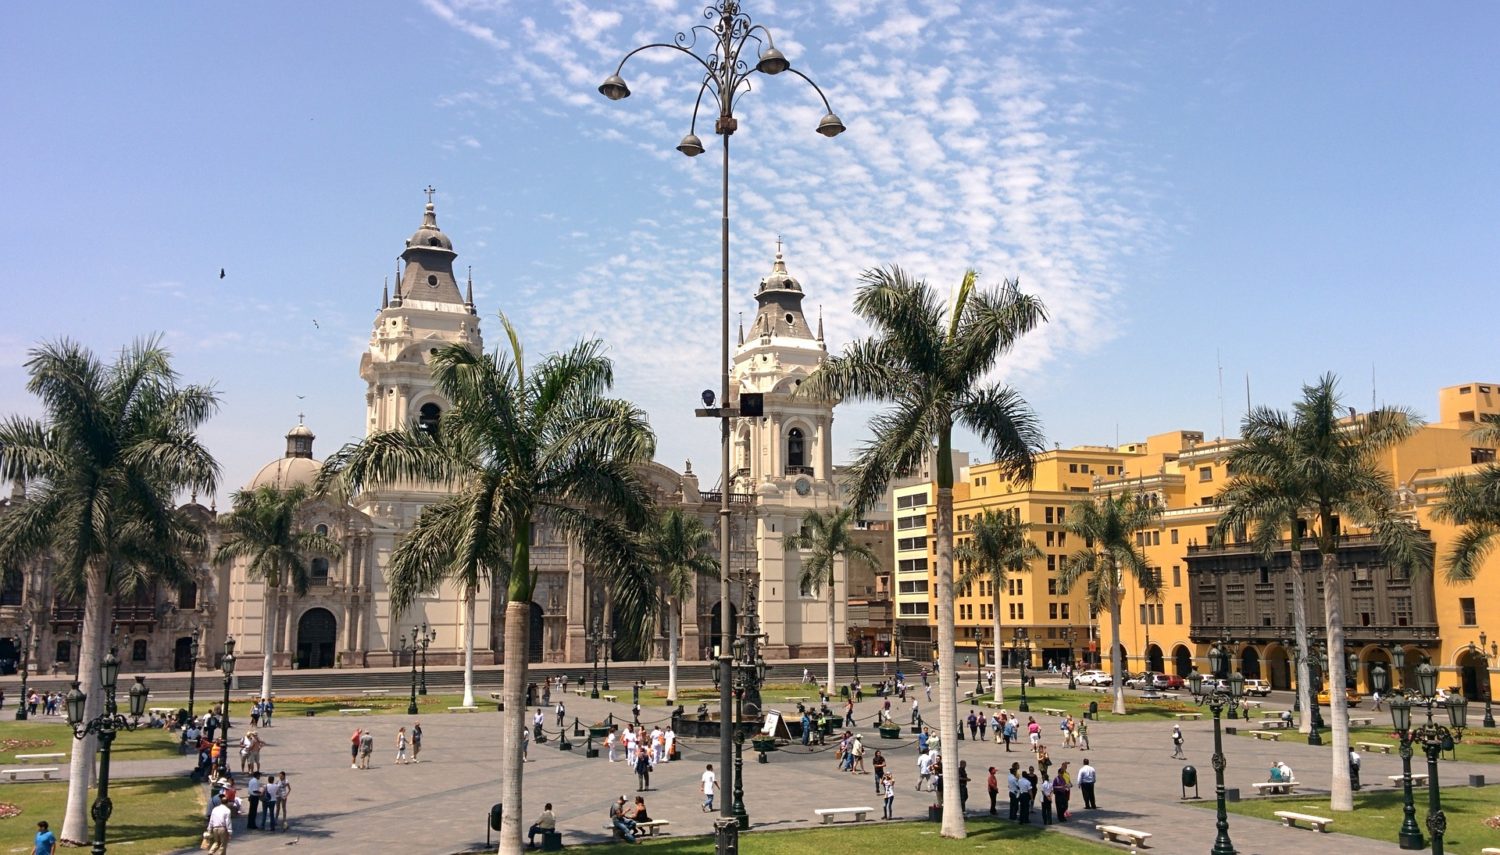 Hoteis em Lima Peru - Plaza das Armas